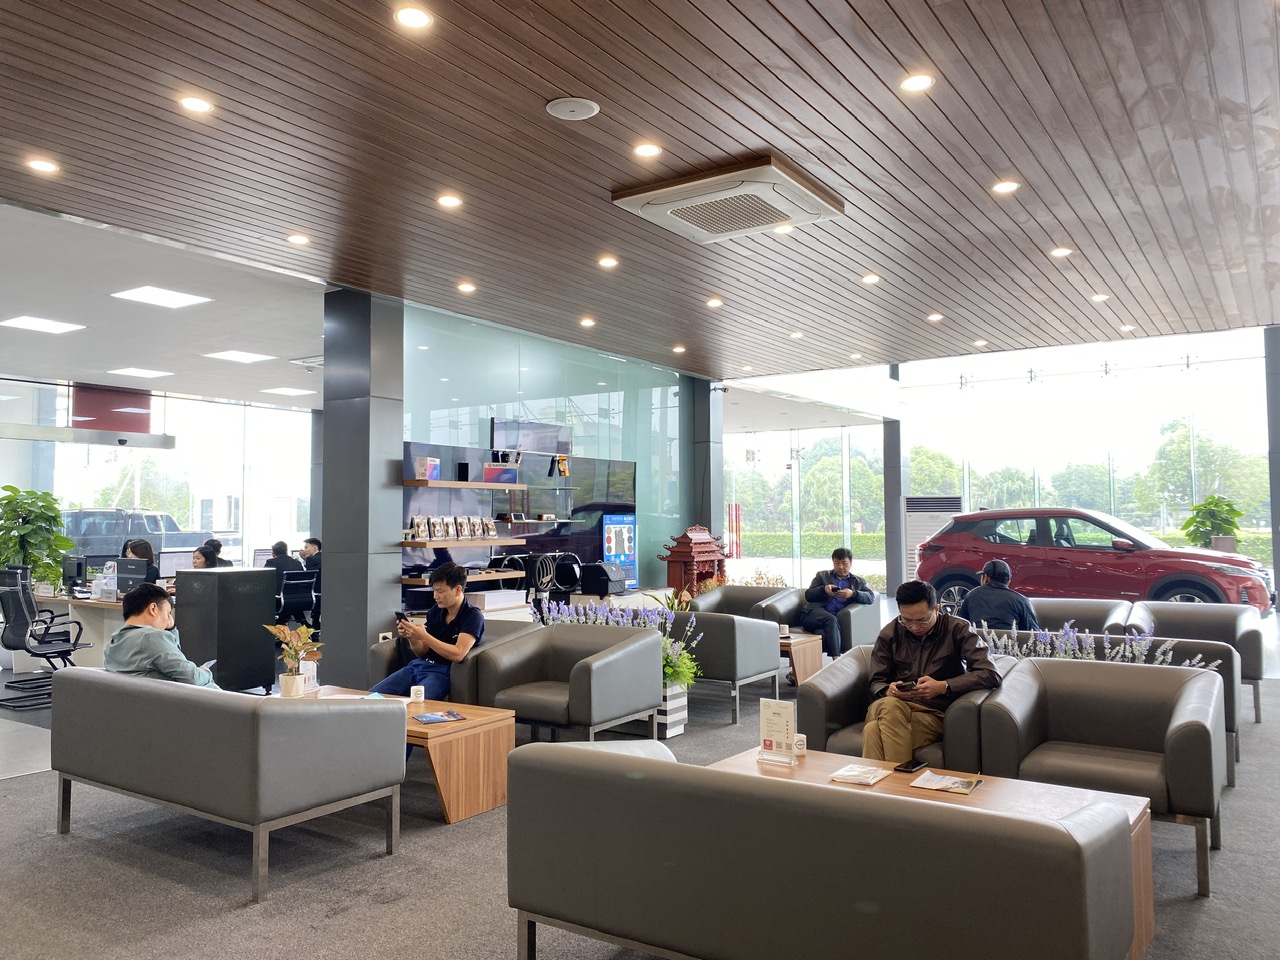 Khu vực Coffee & Drink khách hàng ngồi chờ làm dịch vụ ô tô